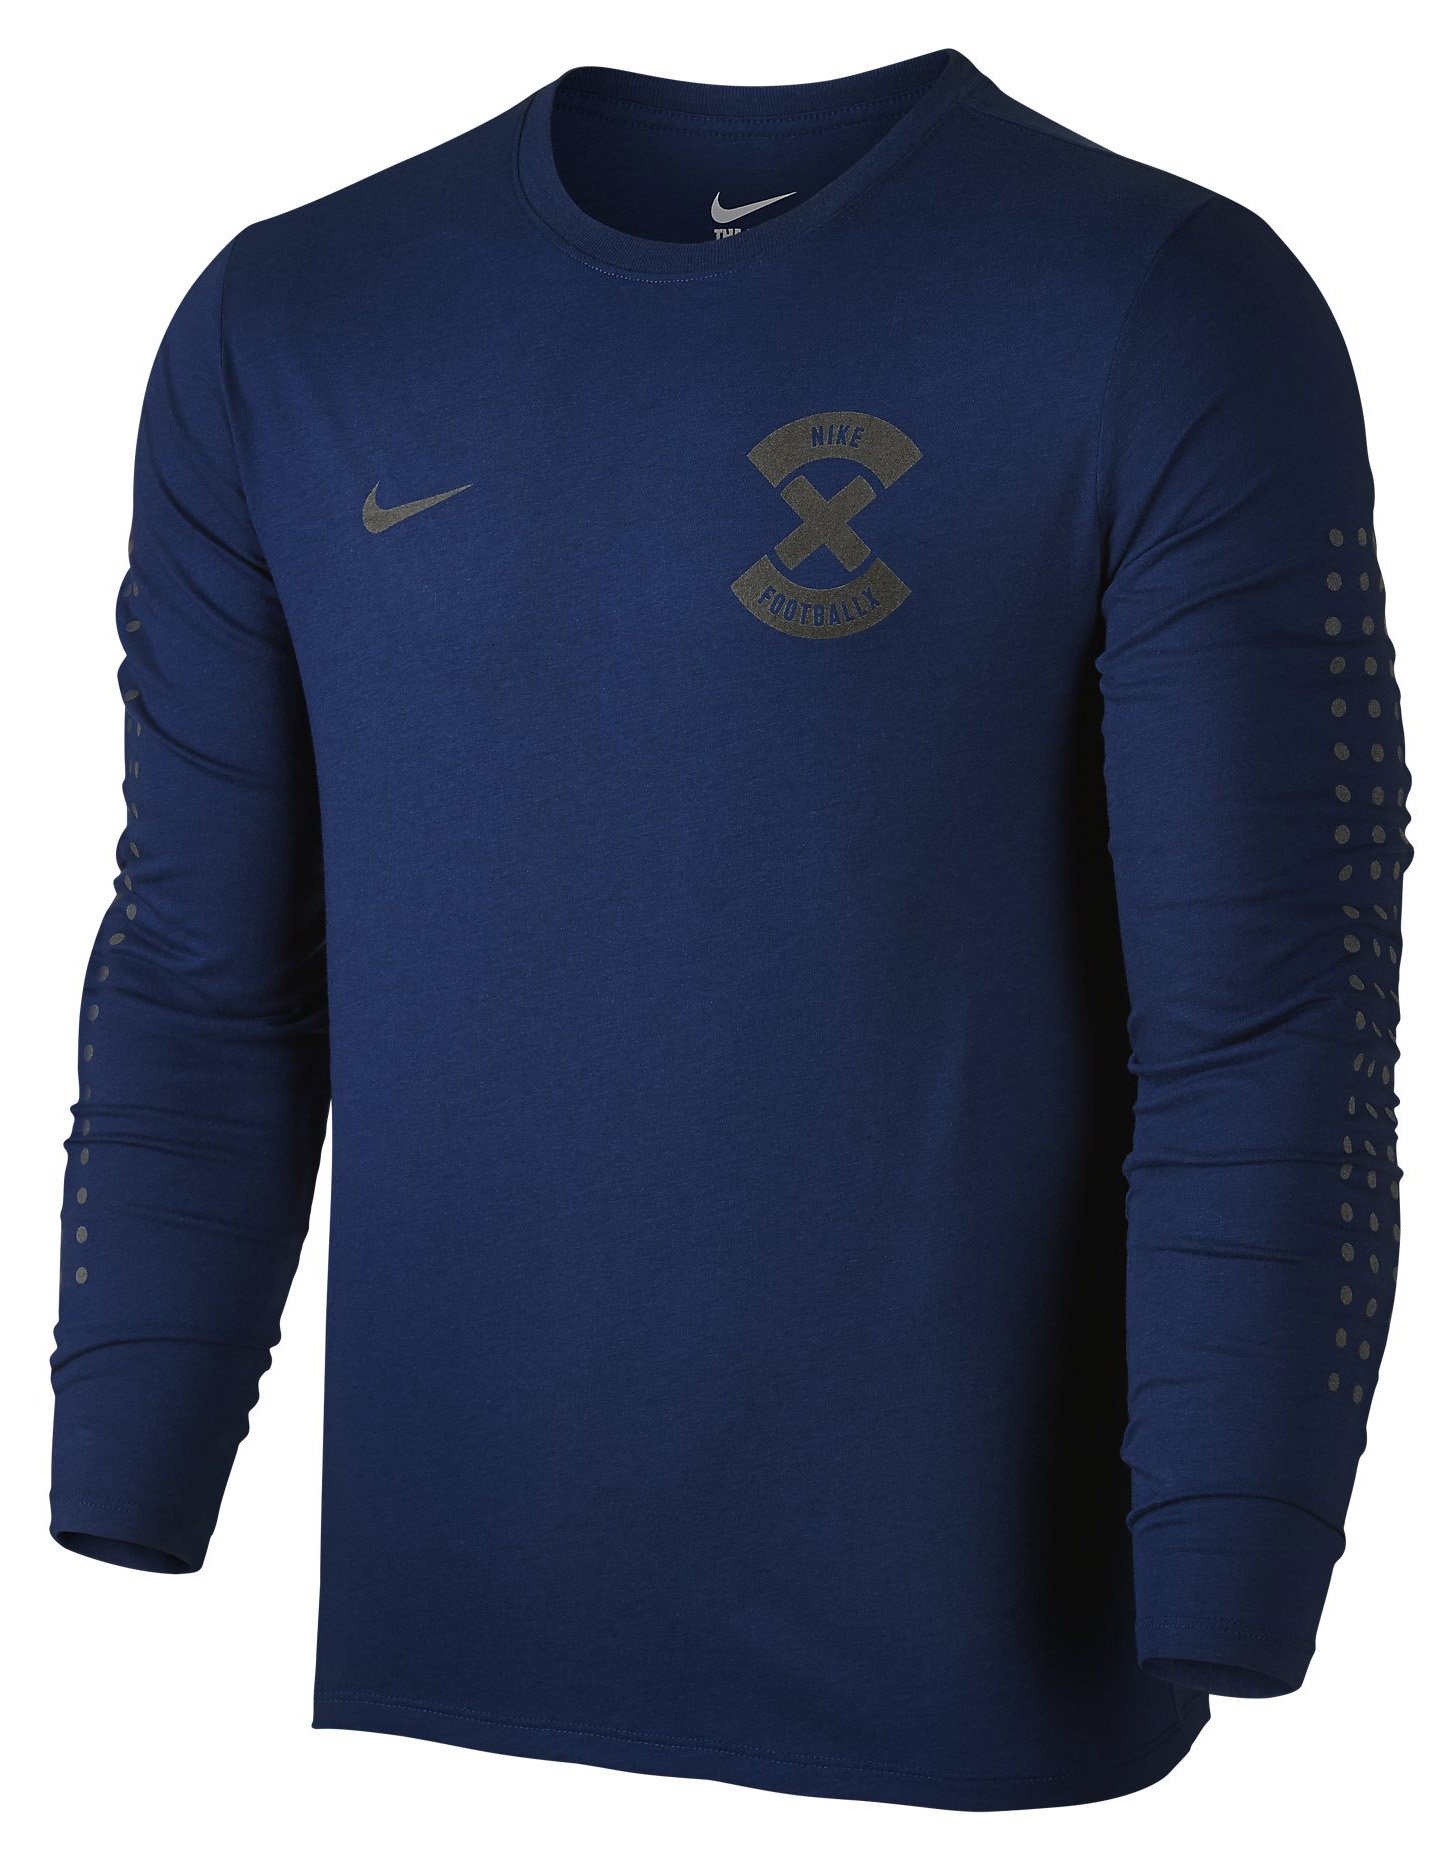 Pánské tričko s dlouhým rukávem Nike FootballX